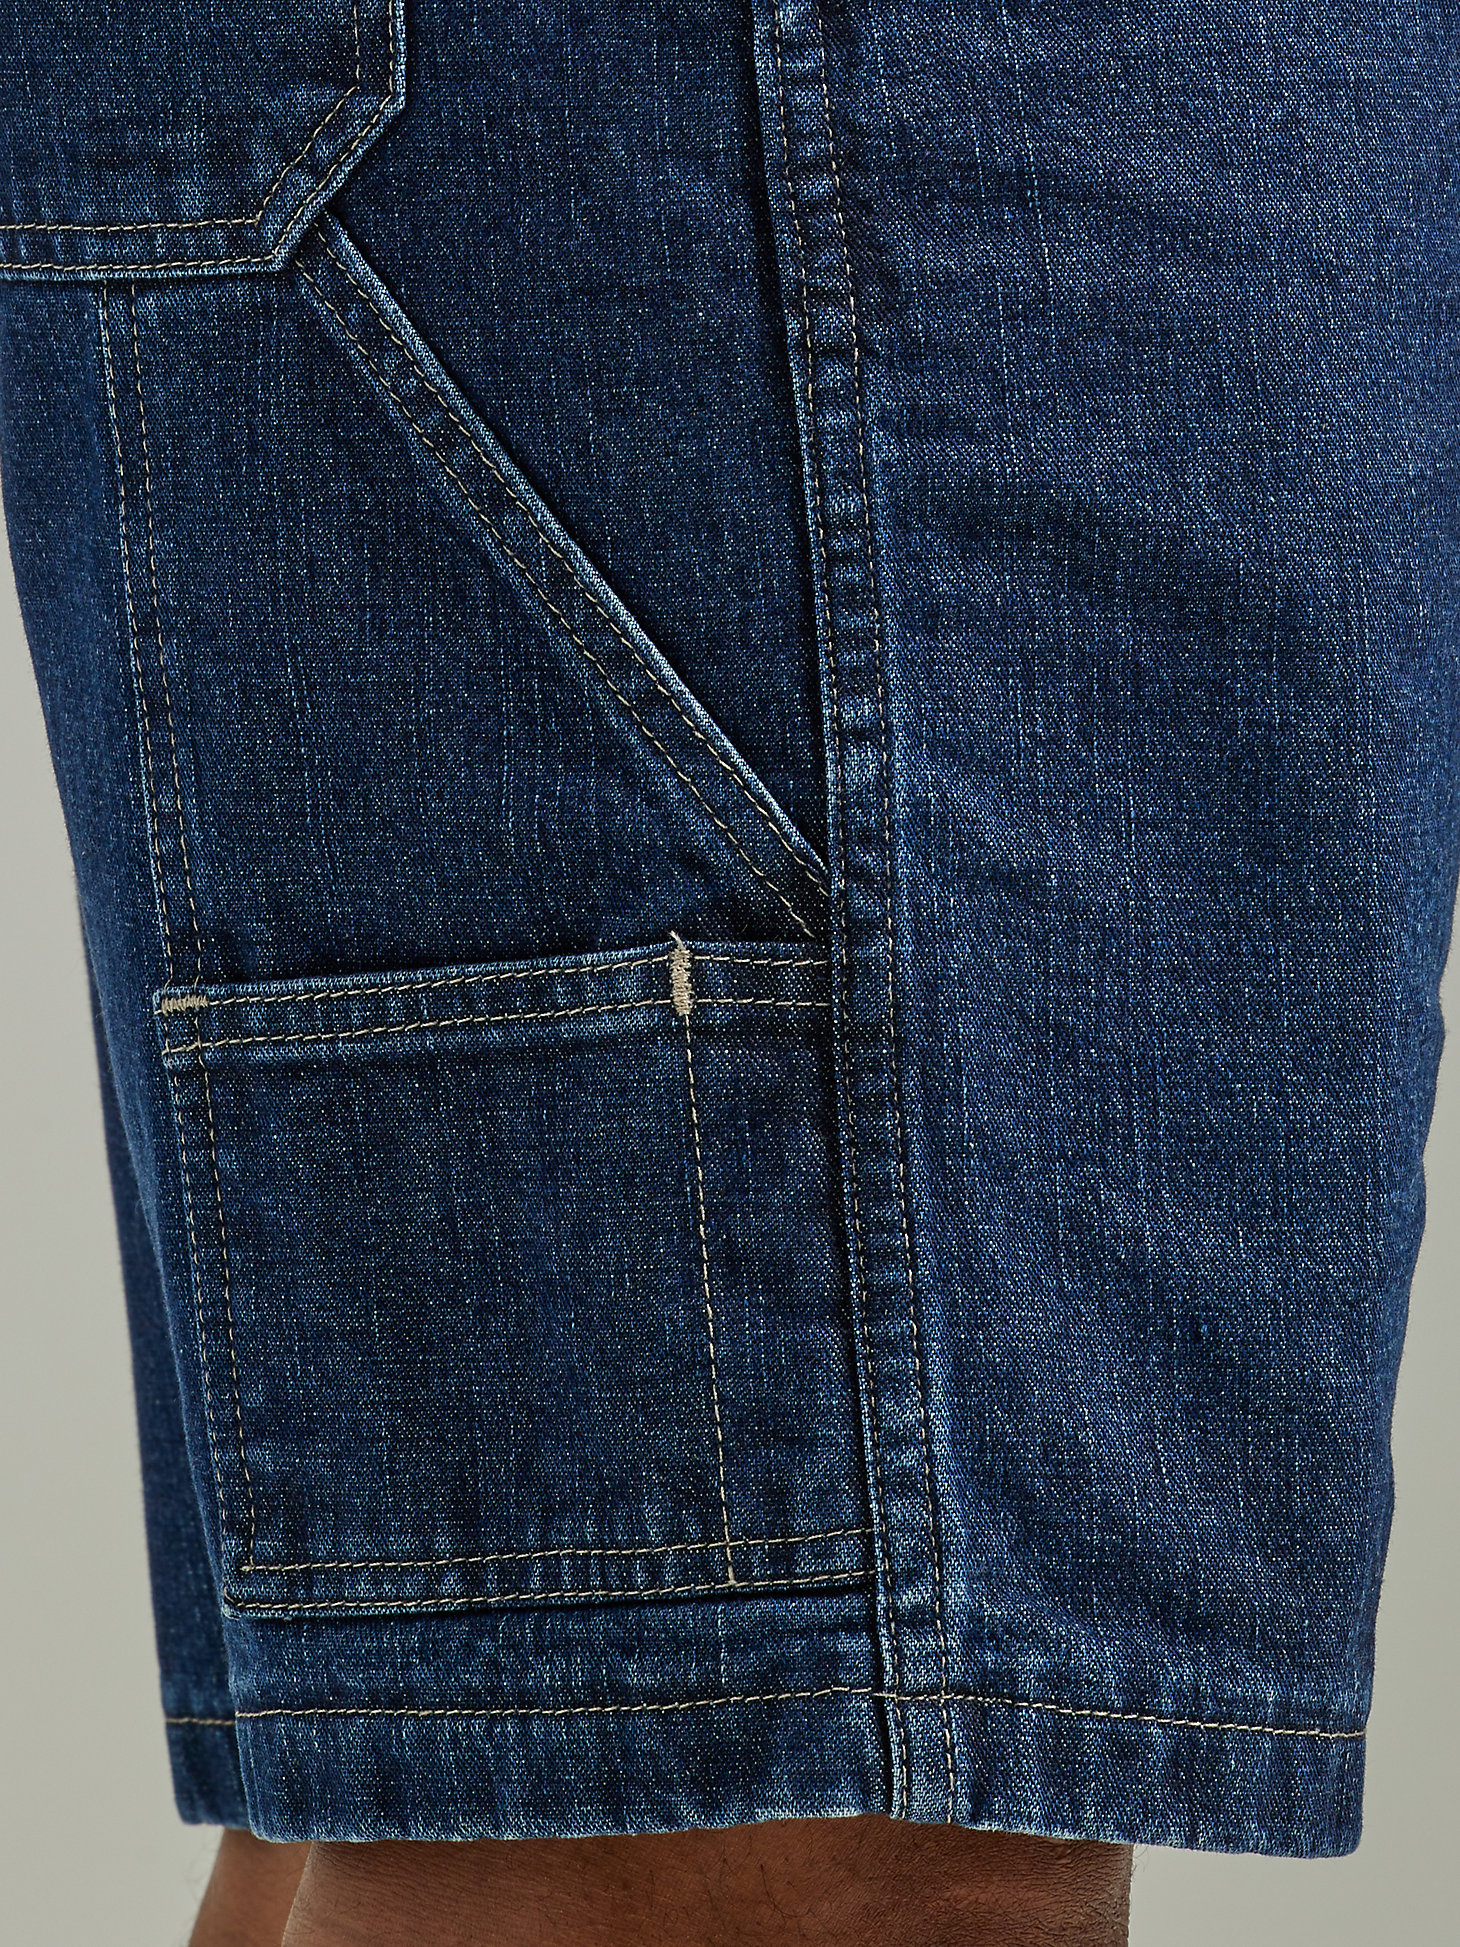 Men's Wrangler® Five Star Premium Carpenter Shorts in Dark Vintage alternative view 5